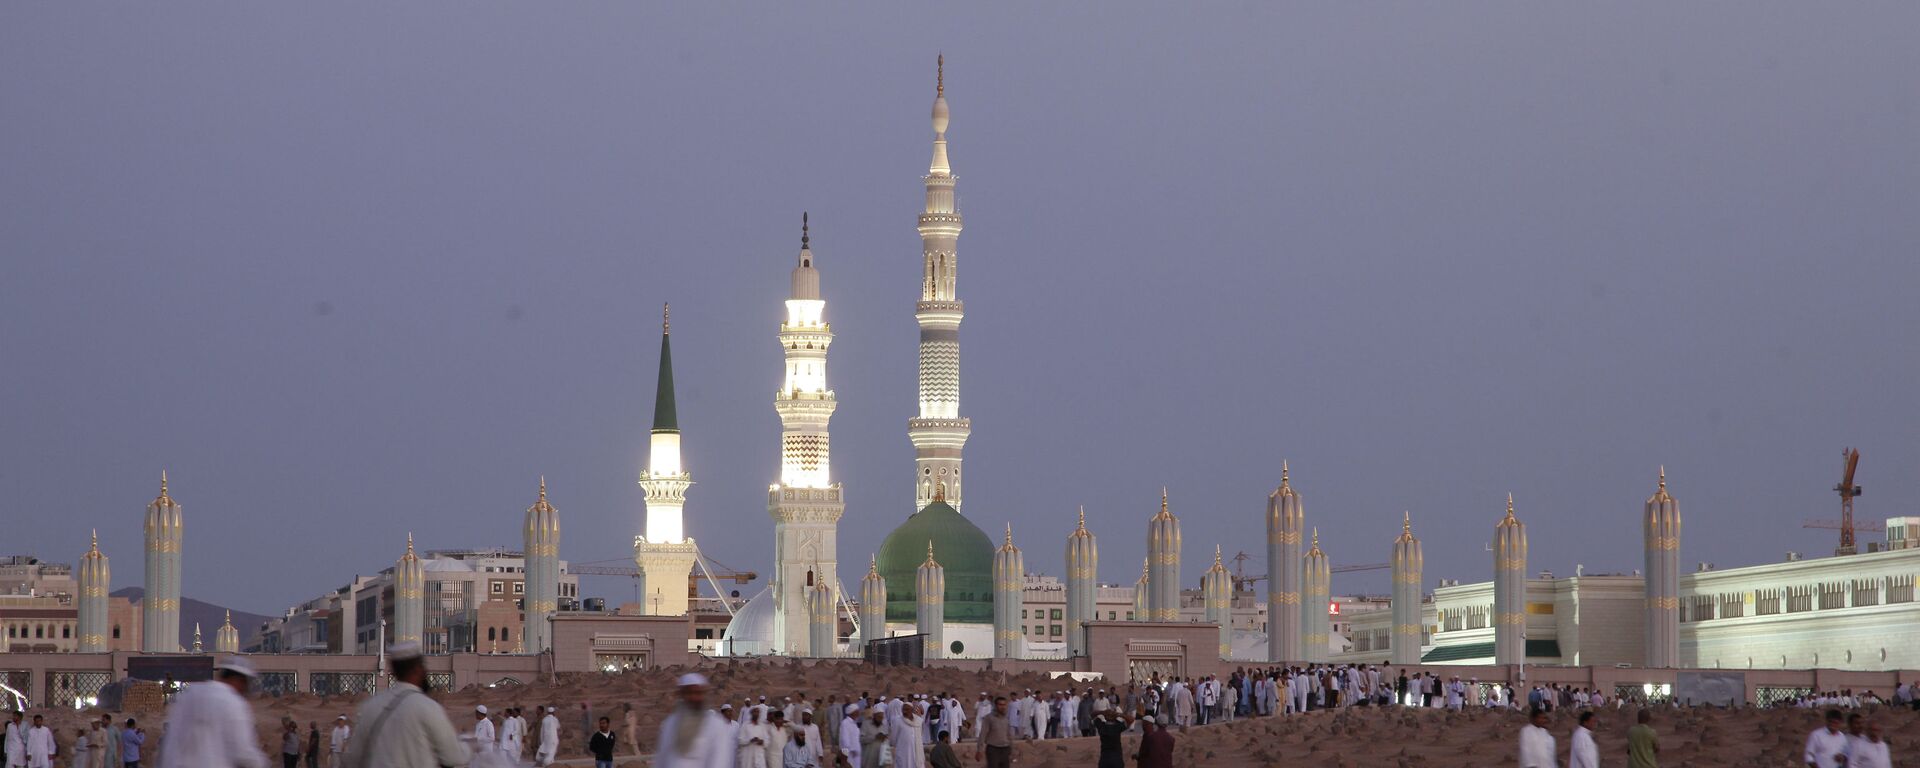 المسجد النبوي في المدينة، السعودية 5 يوليو/ تموز 2013 - سبوتنيك عربي, 1920, 22.09.2022